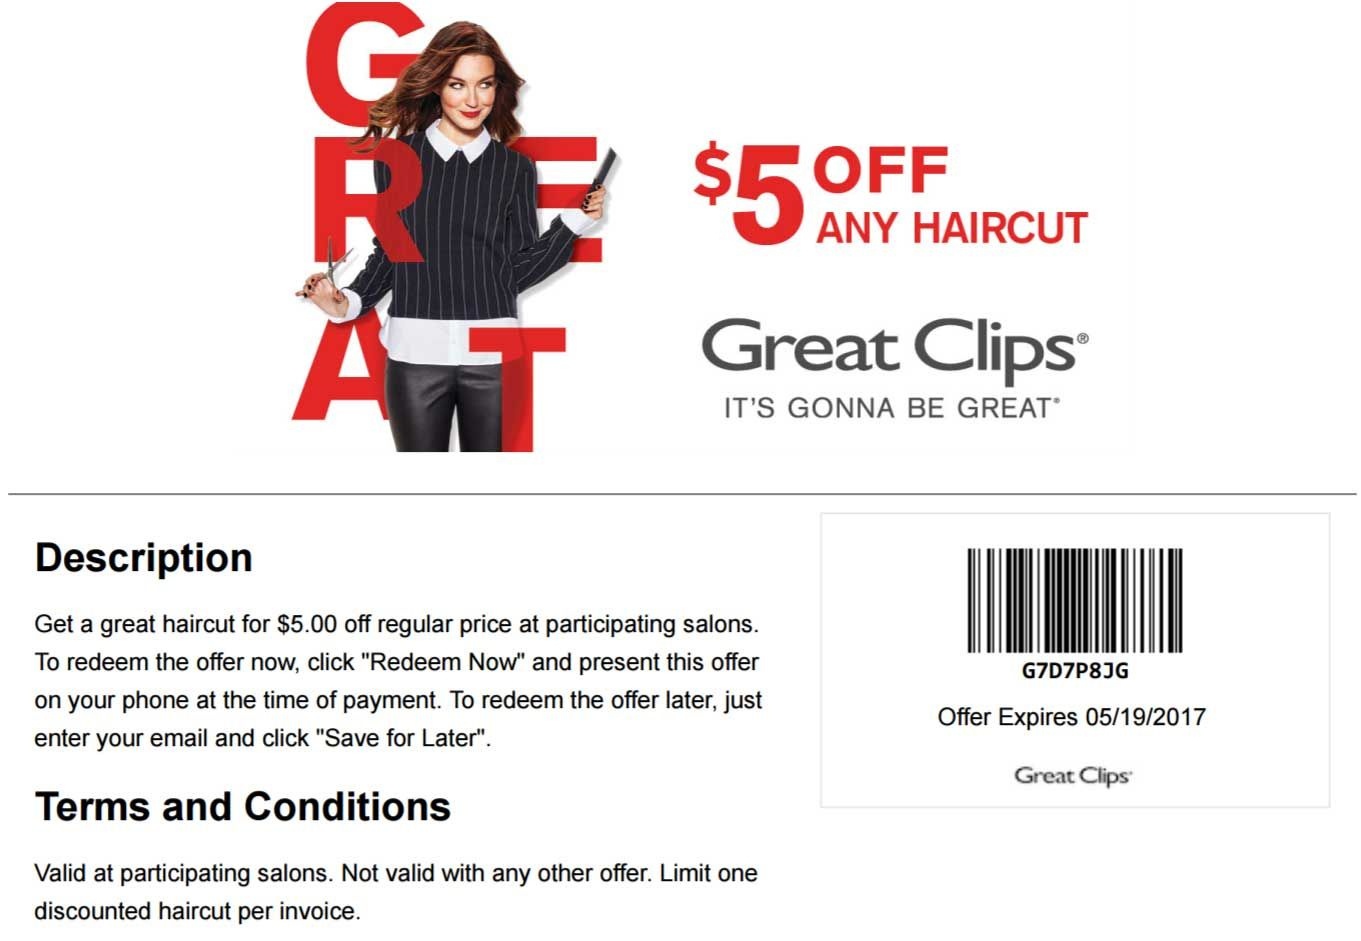 Sports Clips Free Haircut Printable Coupon Free Printable